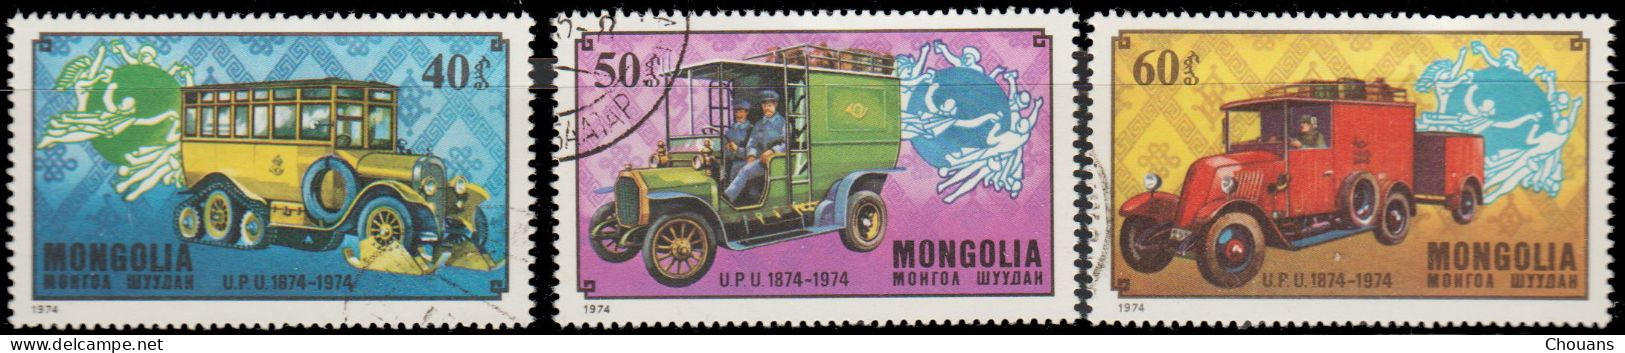 Mongolie 1974. ~ YT 764/66 - Centenaire U.P.U. - Transports Postaux - Mongolia